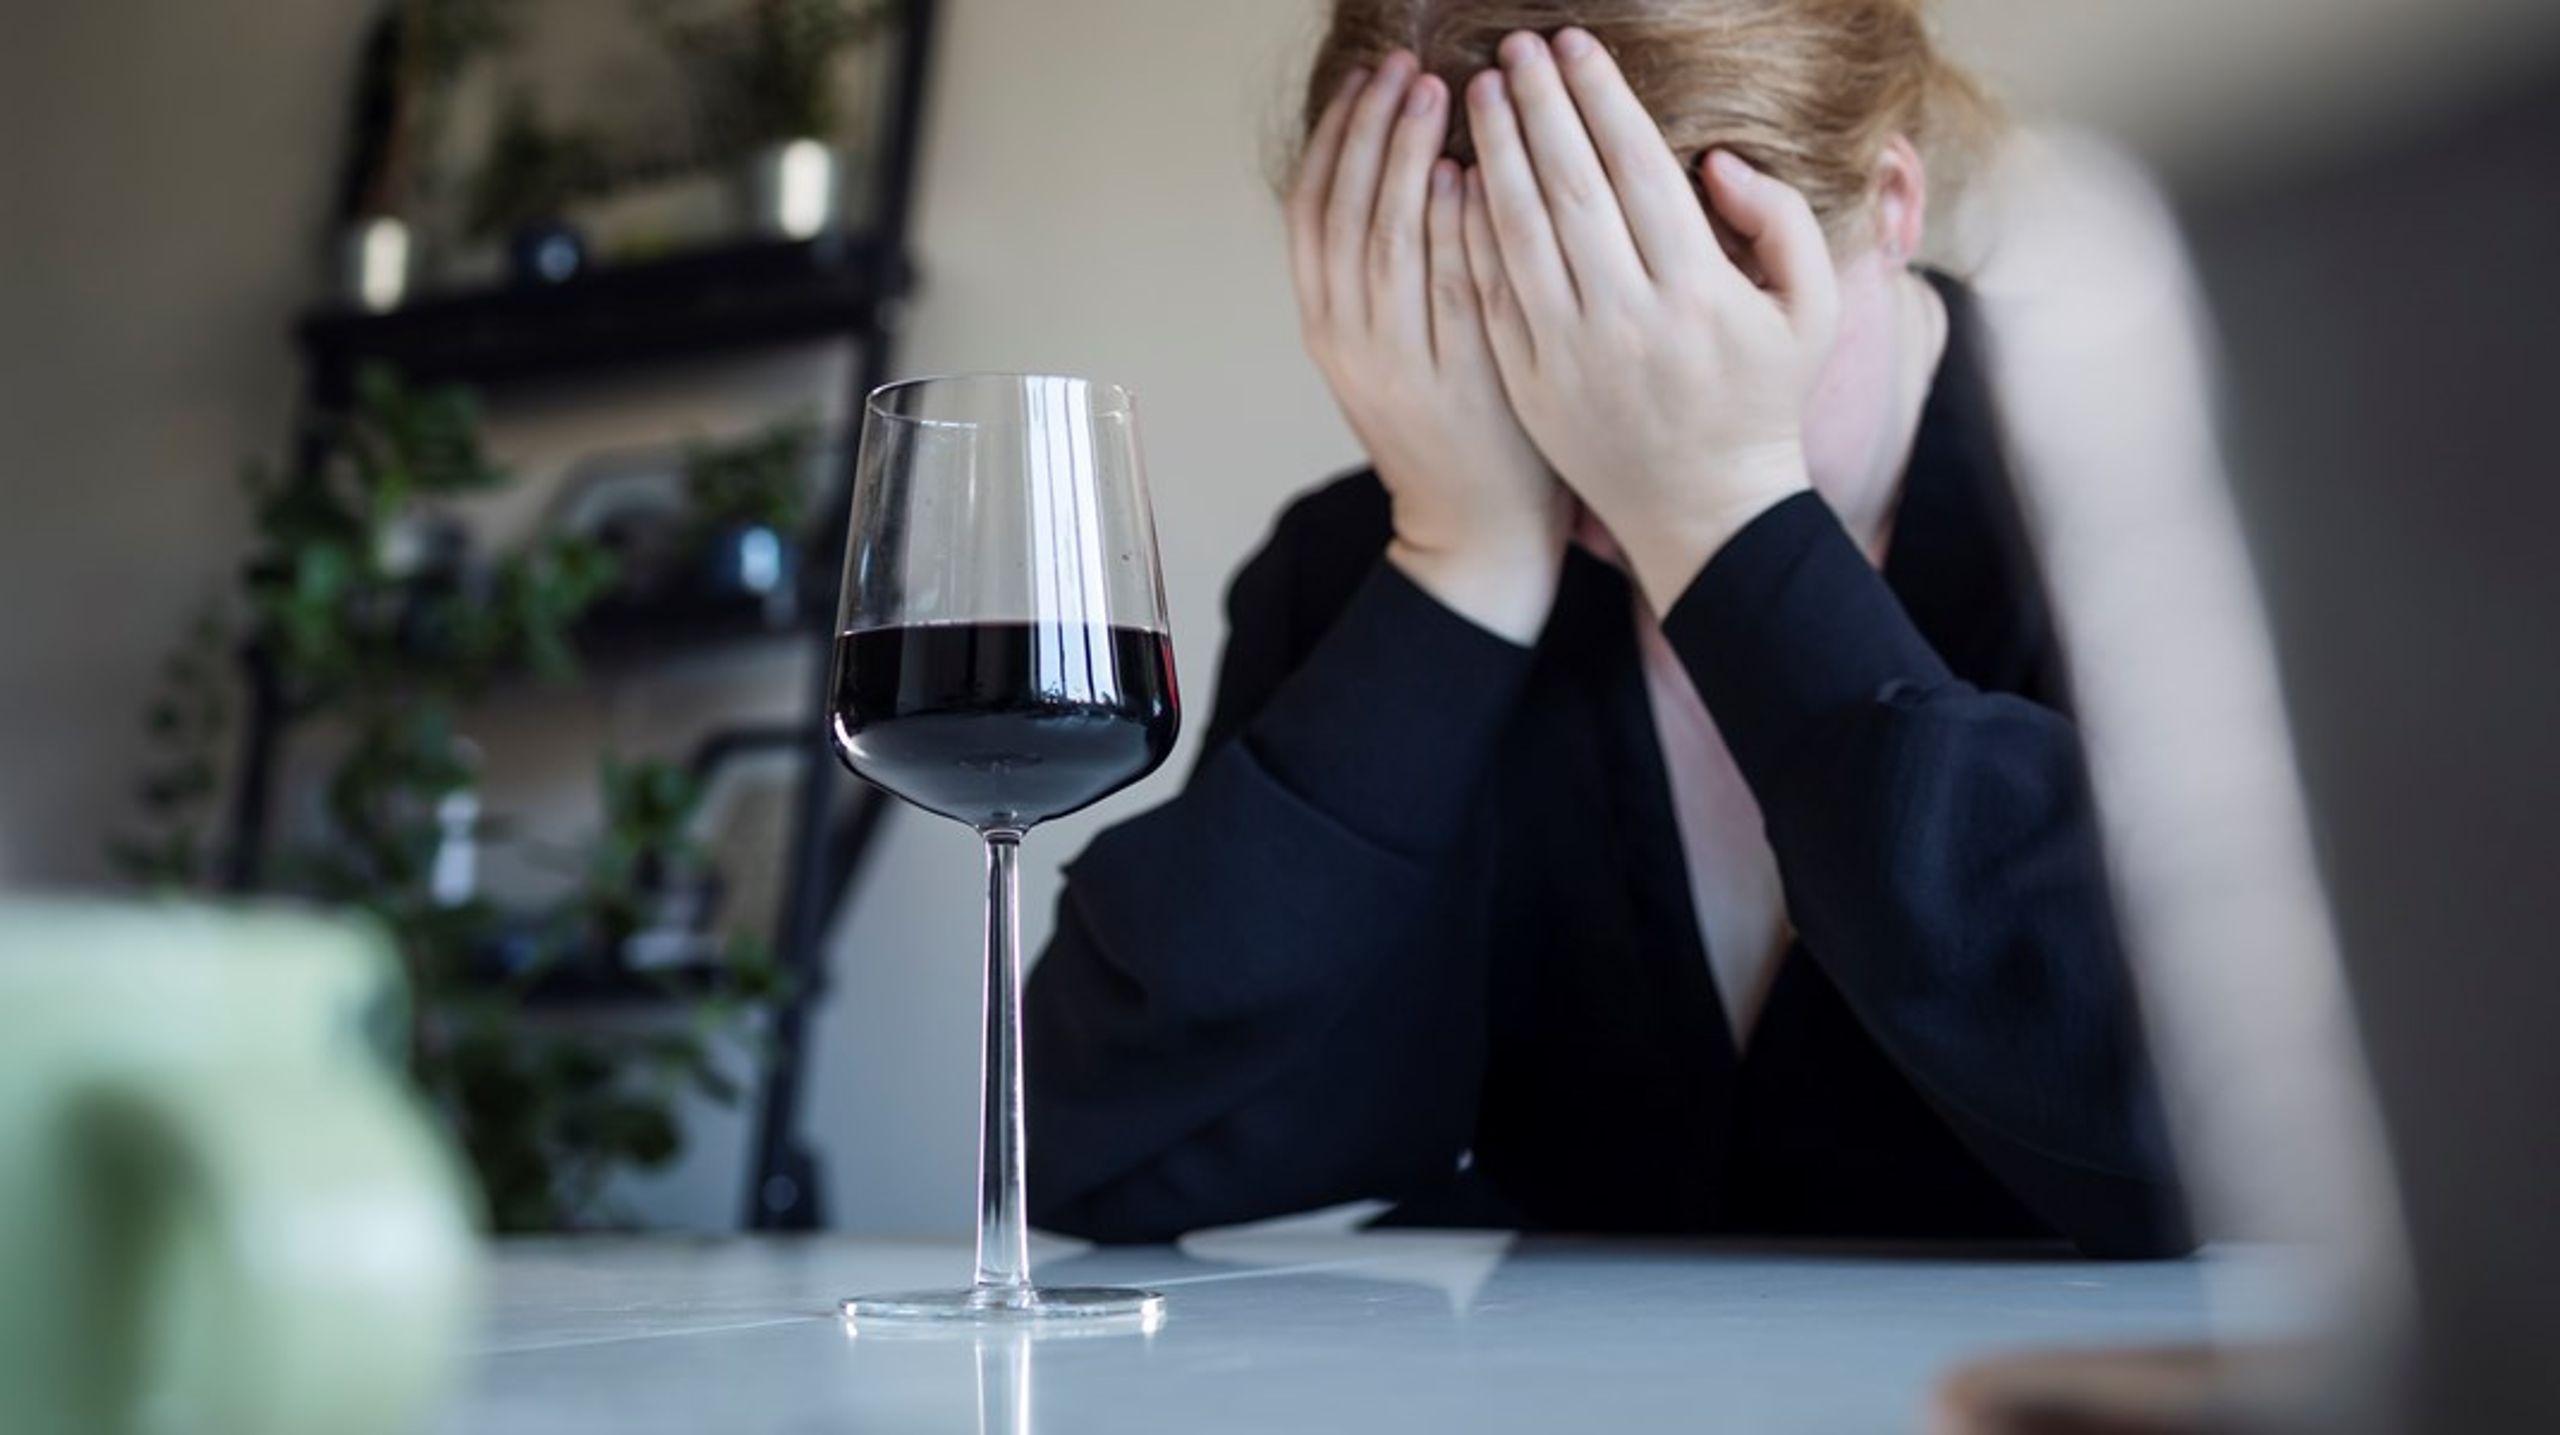 ”Alkoholskatt har många fördelar, förutom att bidra med resurser till bland annat sjukvård och polis så leder högre skatter även till lägre alkoholkonsumtion och mindre alkoholskador.”